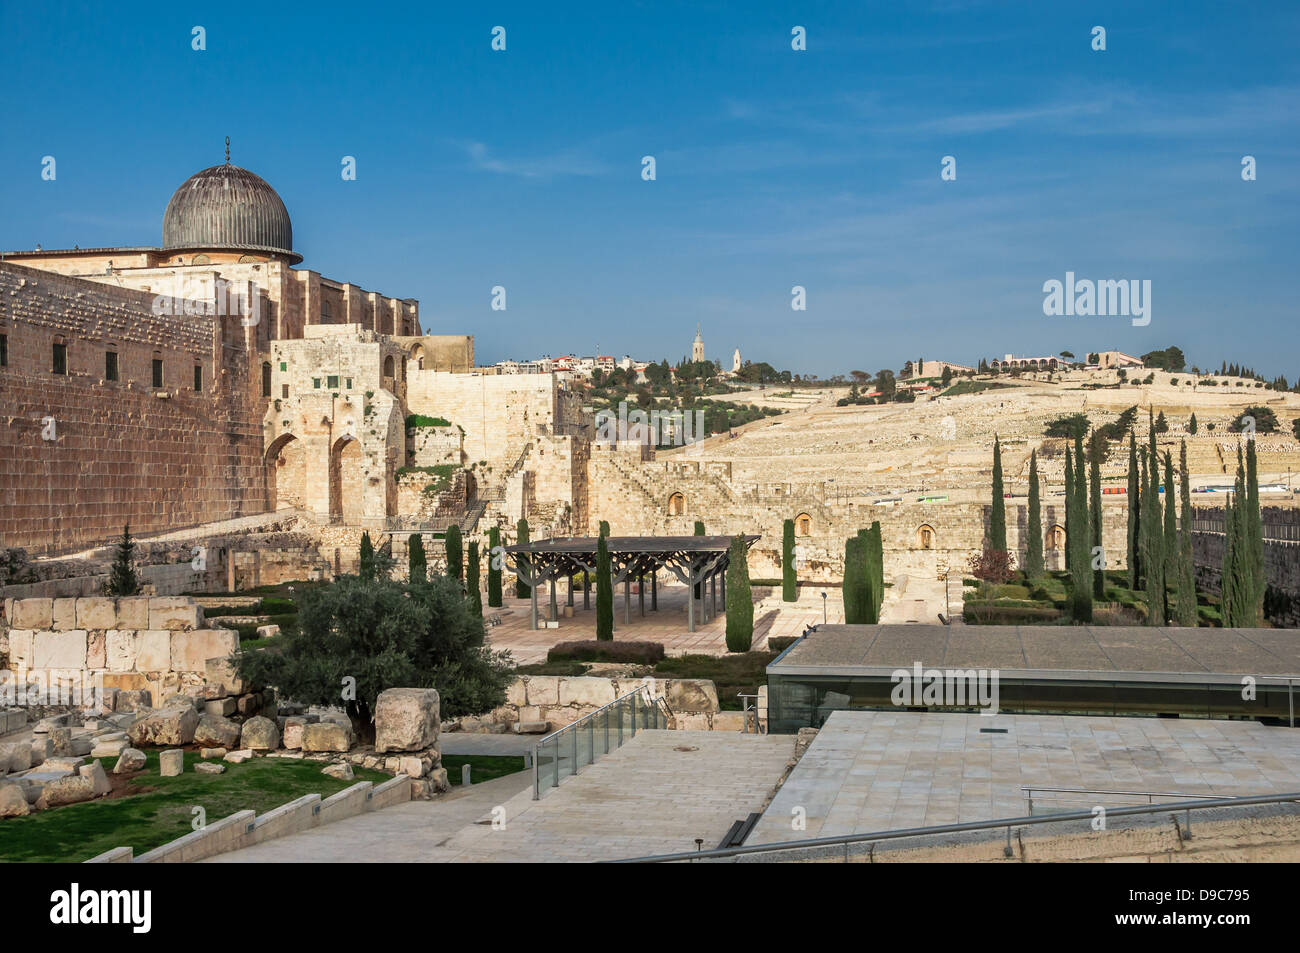 Parco archeologico vicino alle mura di Gerusalemme, Israele con la moschea Al Aqsa e il cimitero jeus nel backfround Foto Stock